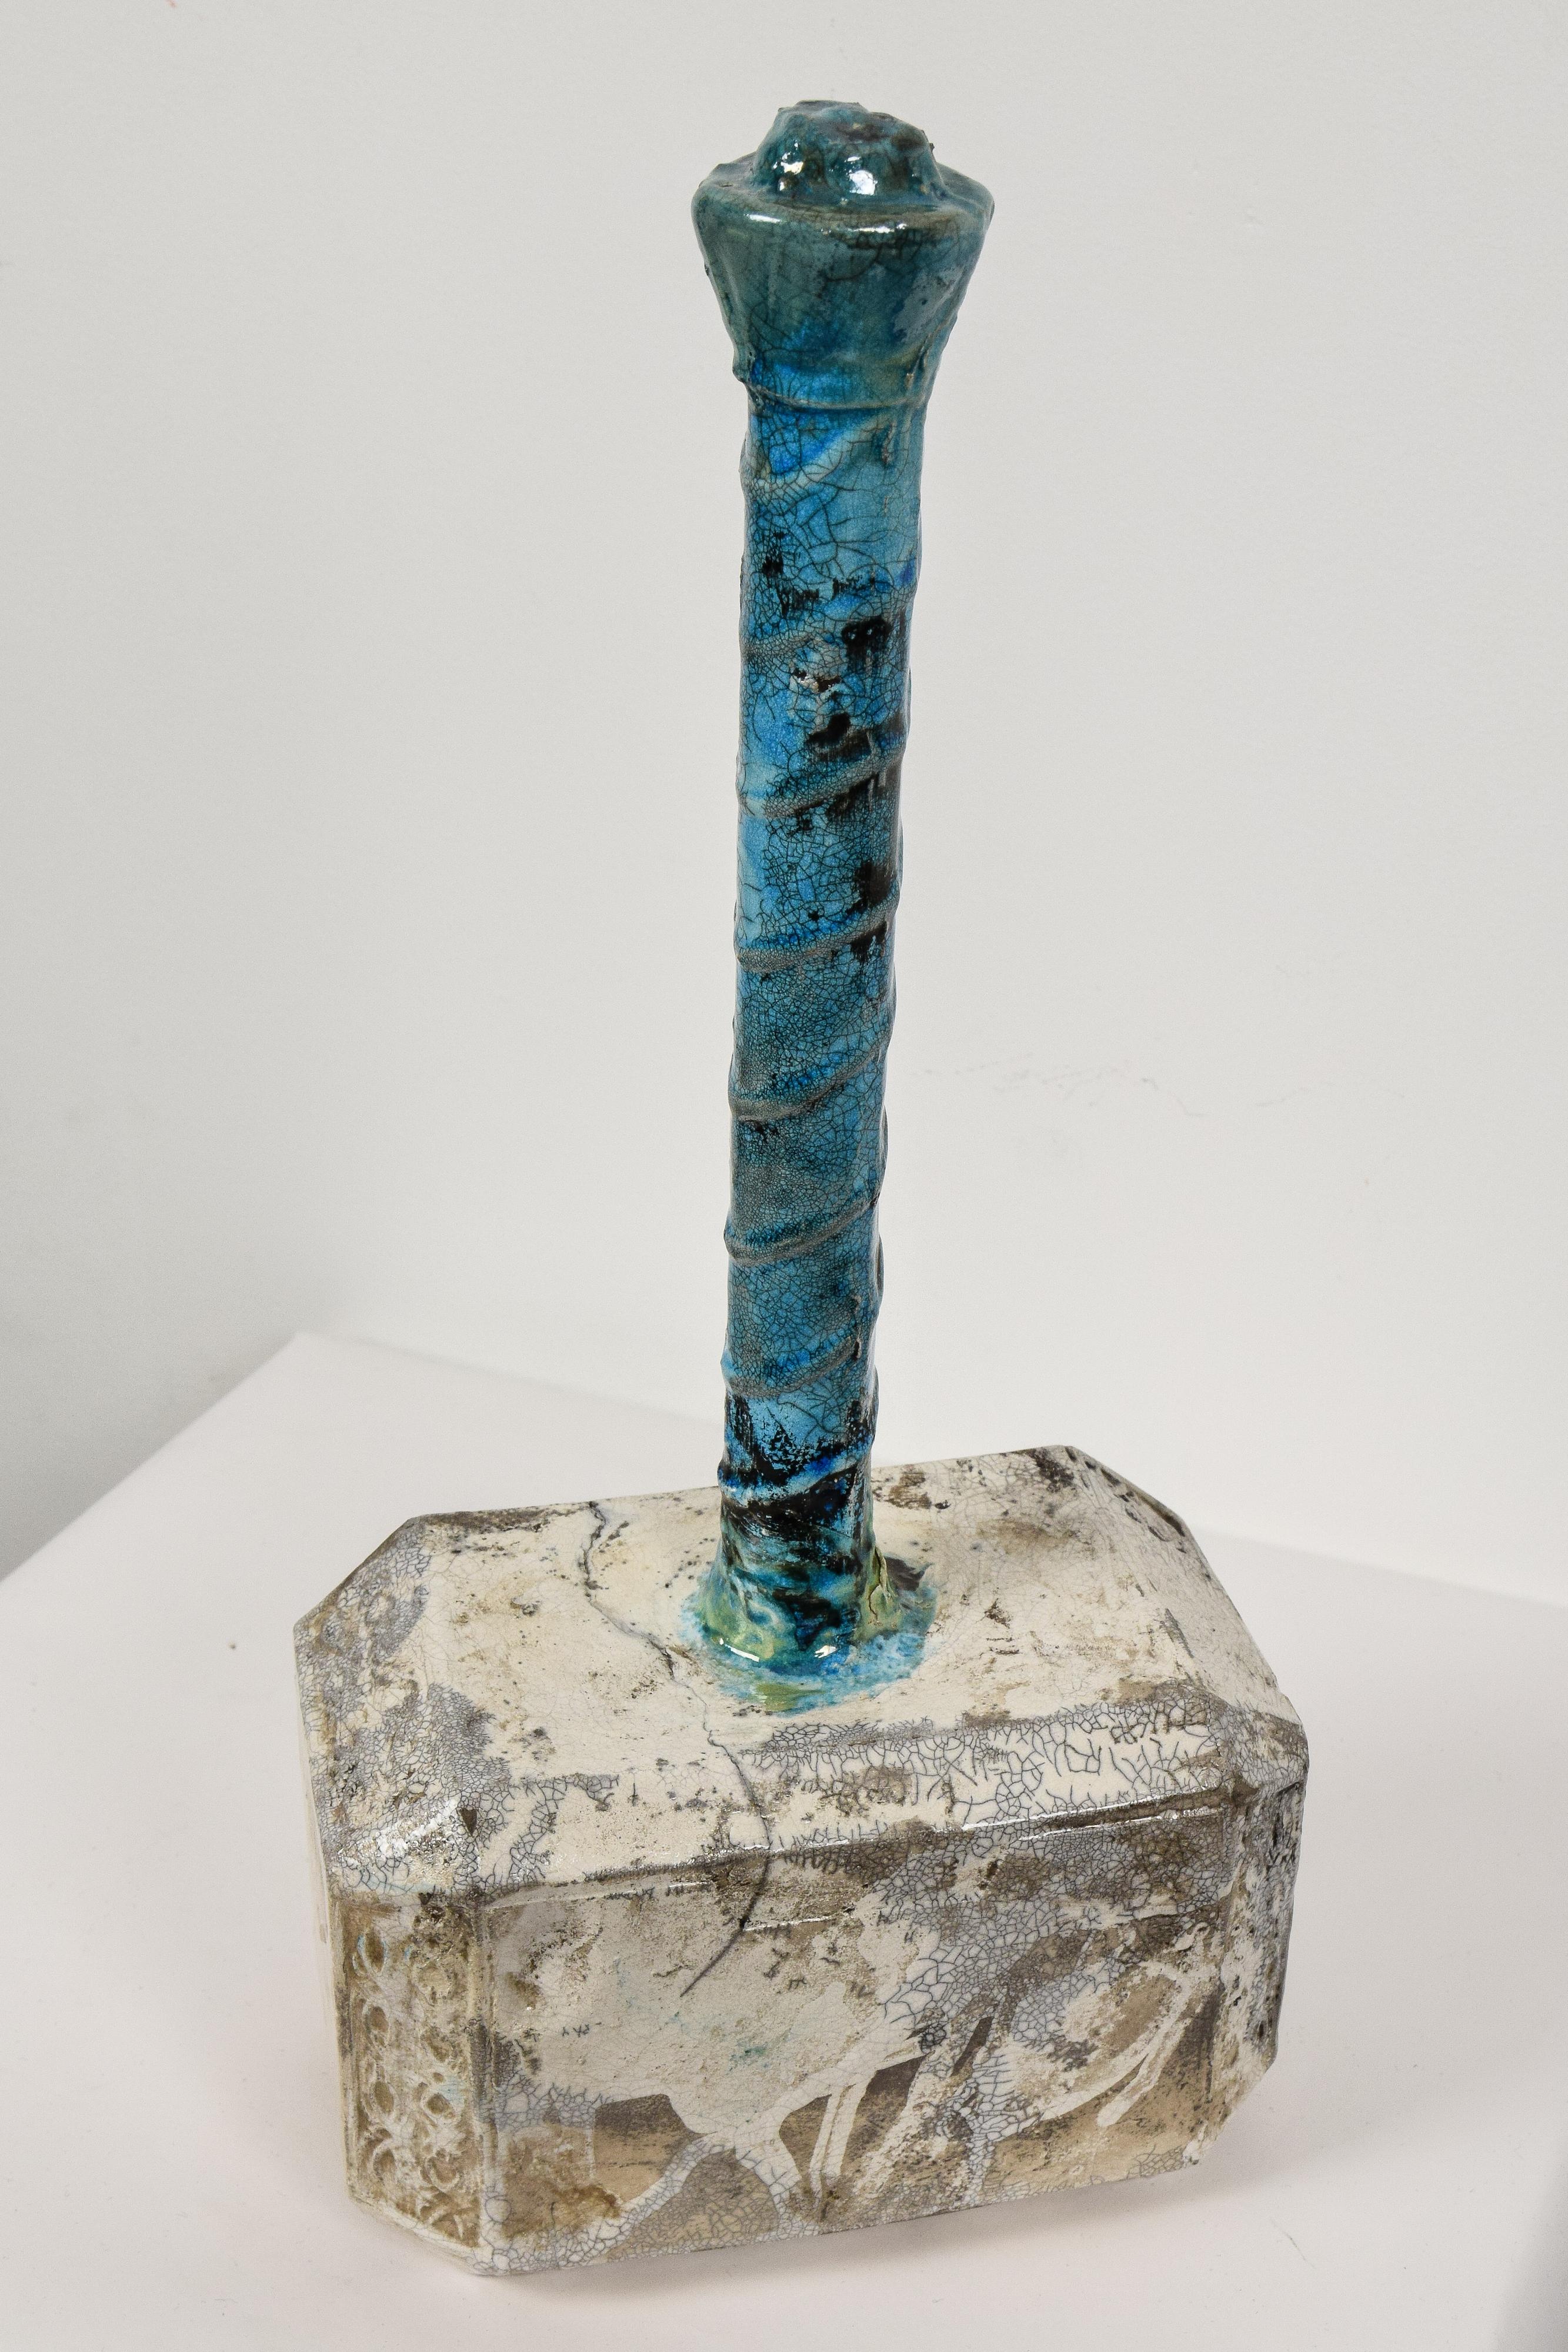 Mjolnir by NAM TRAN - Ceramic, Sculptor, Contemporary, Hammer - Gray Still-Life Sculpture by Nam Tran